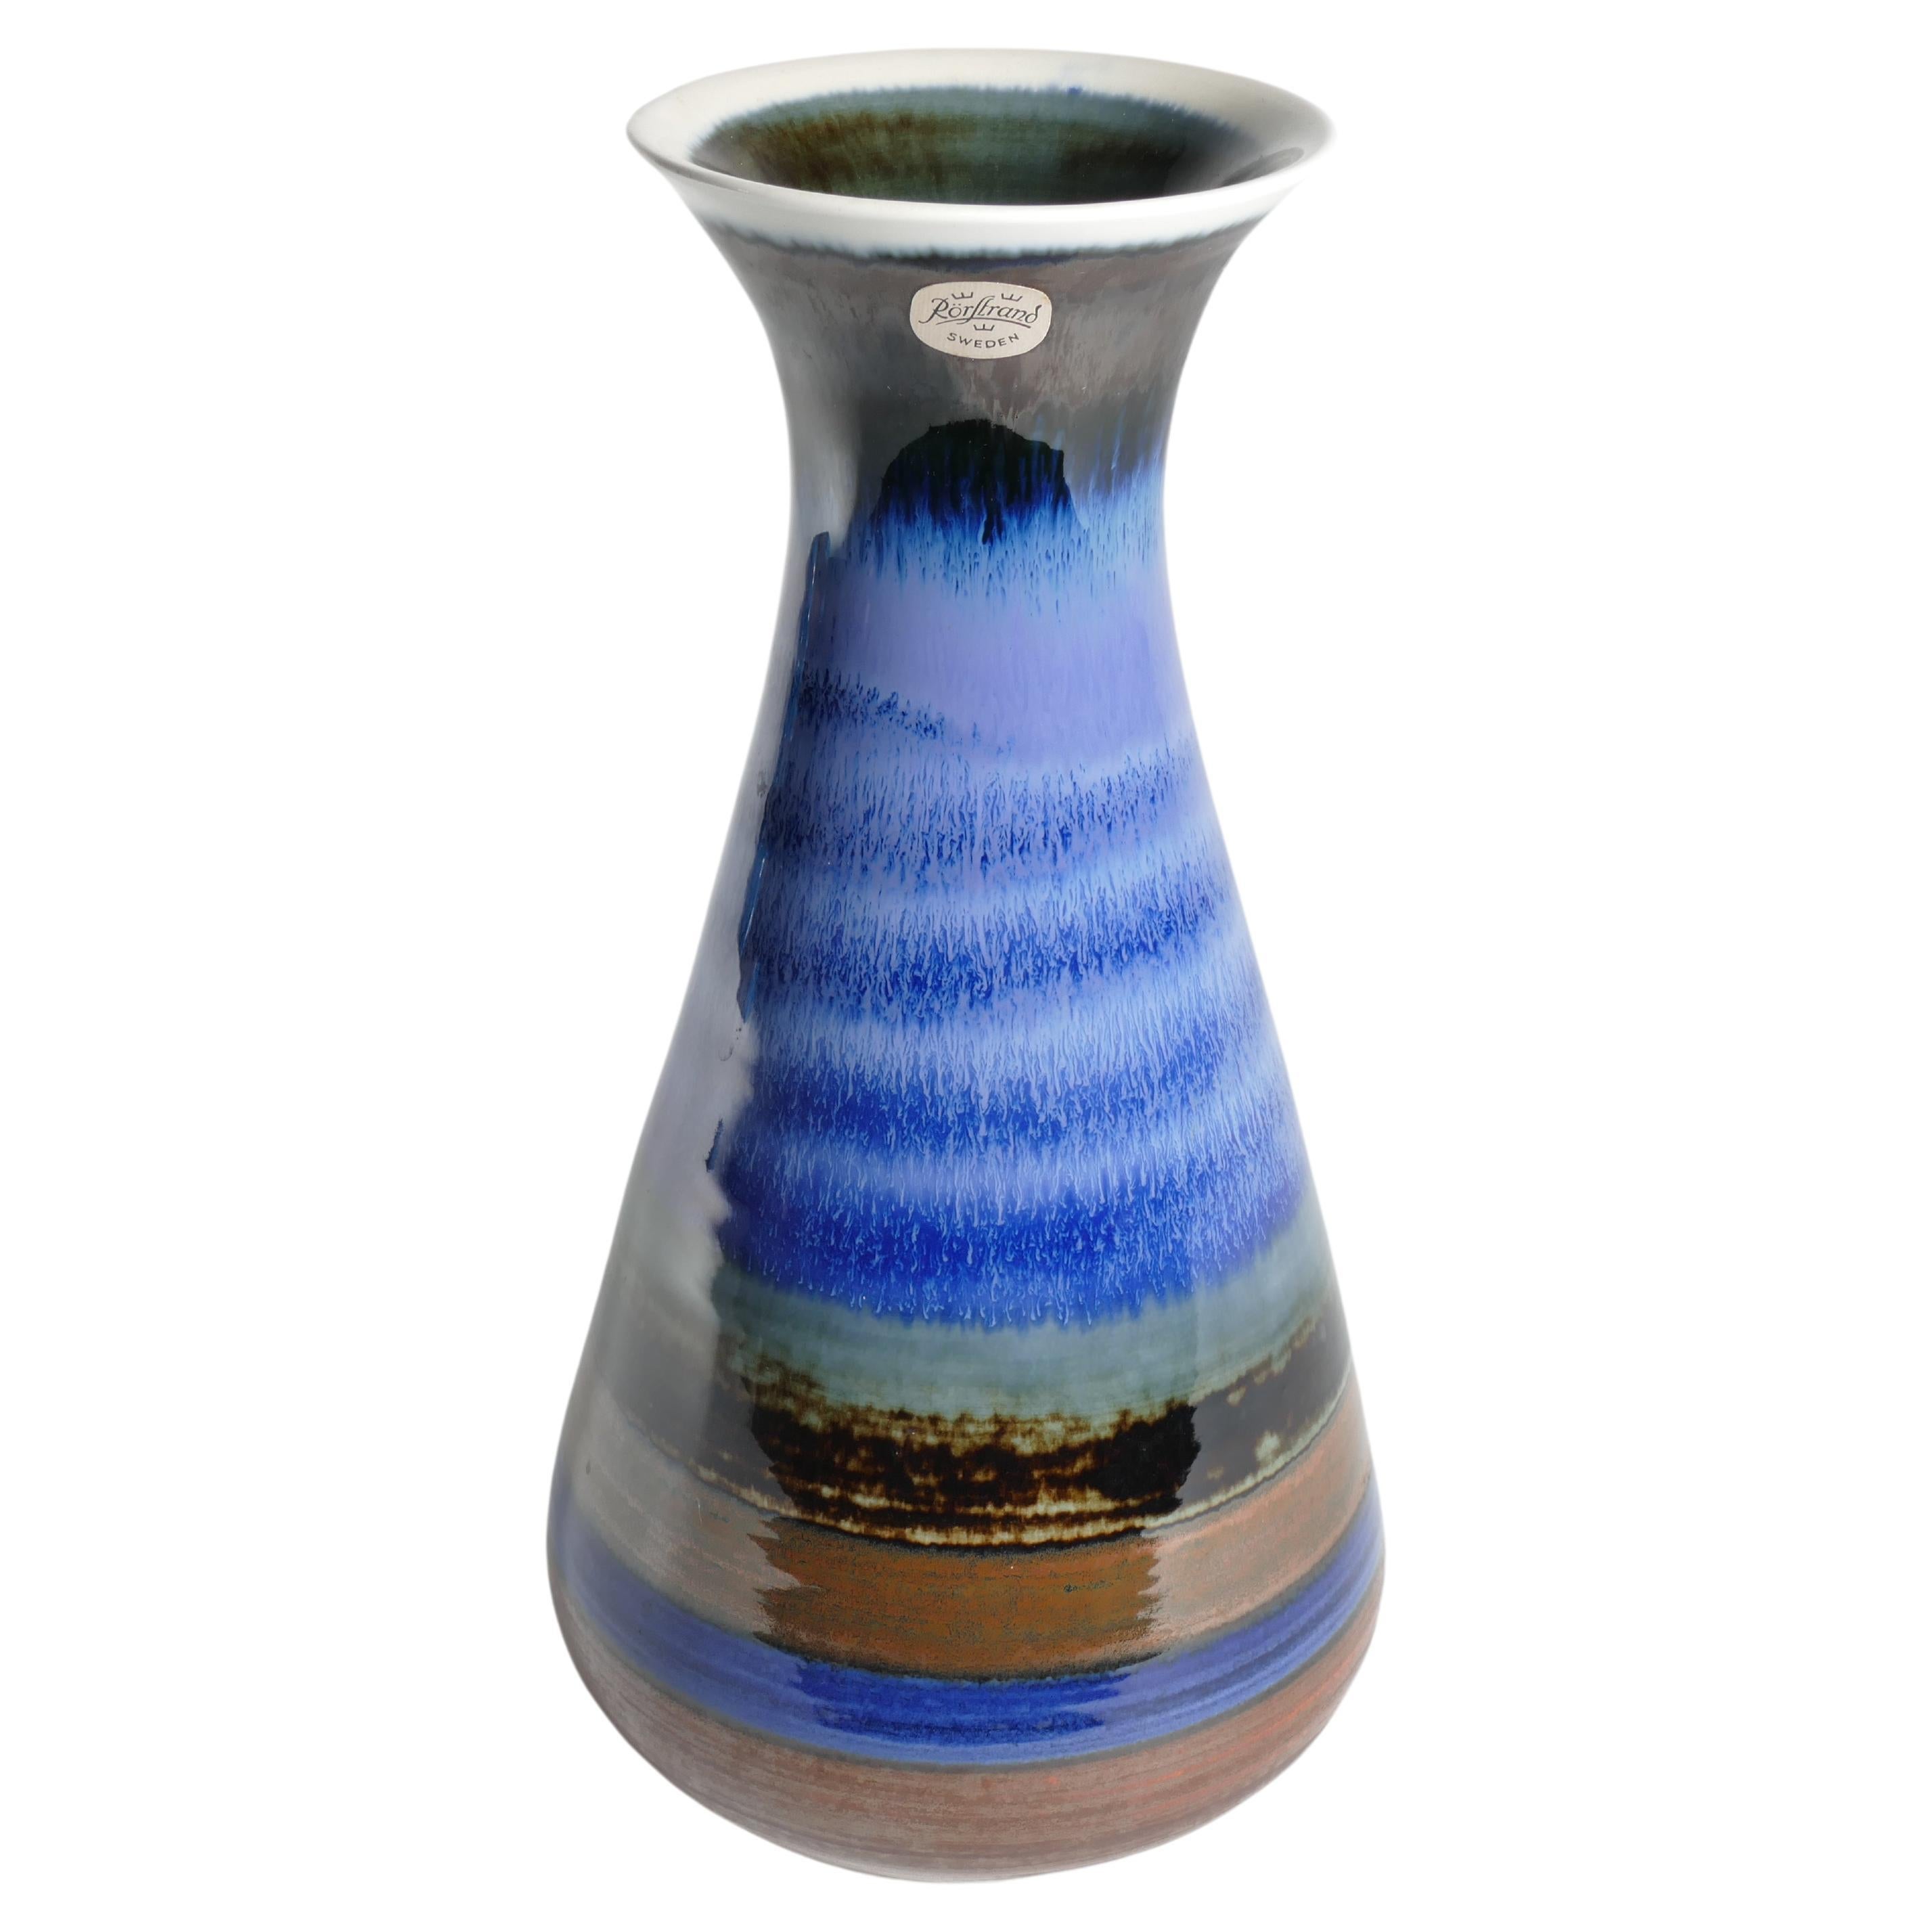 Dies ist eine absolut fabelhafte Vase aus Steingut mit polychromem Dekor, die von Gösta Millberg für Rörstrand in Schweden entworfen wurde. Sie ist Teil einer limitierten Serie aus einer Studio-Produktion. Die unterschiedliche Verwendung von